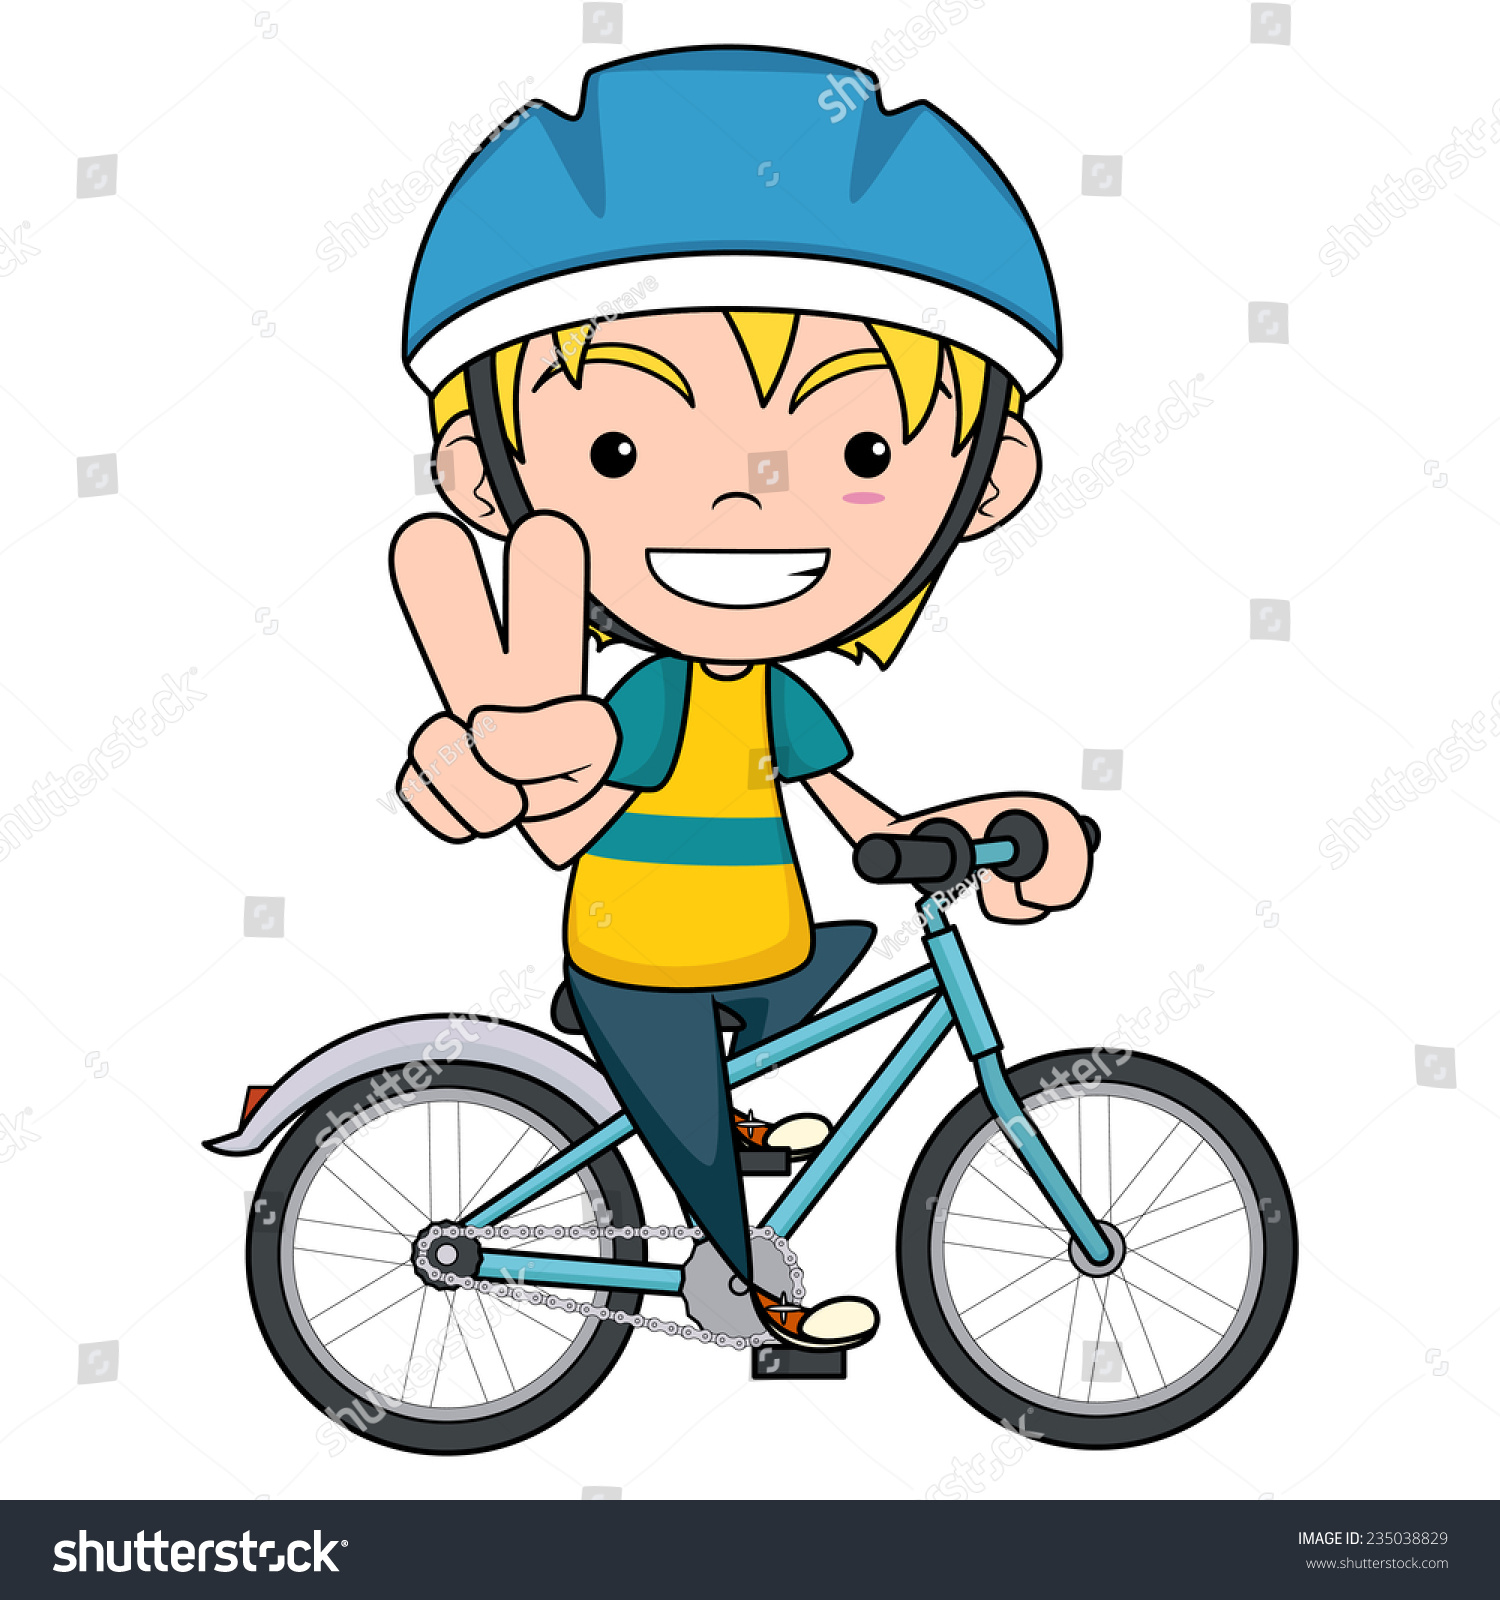 clipart child on bike - photo #20